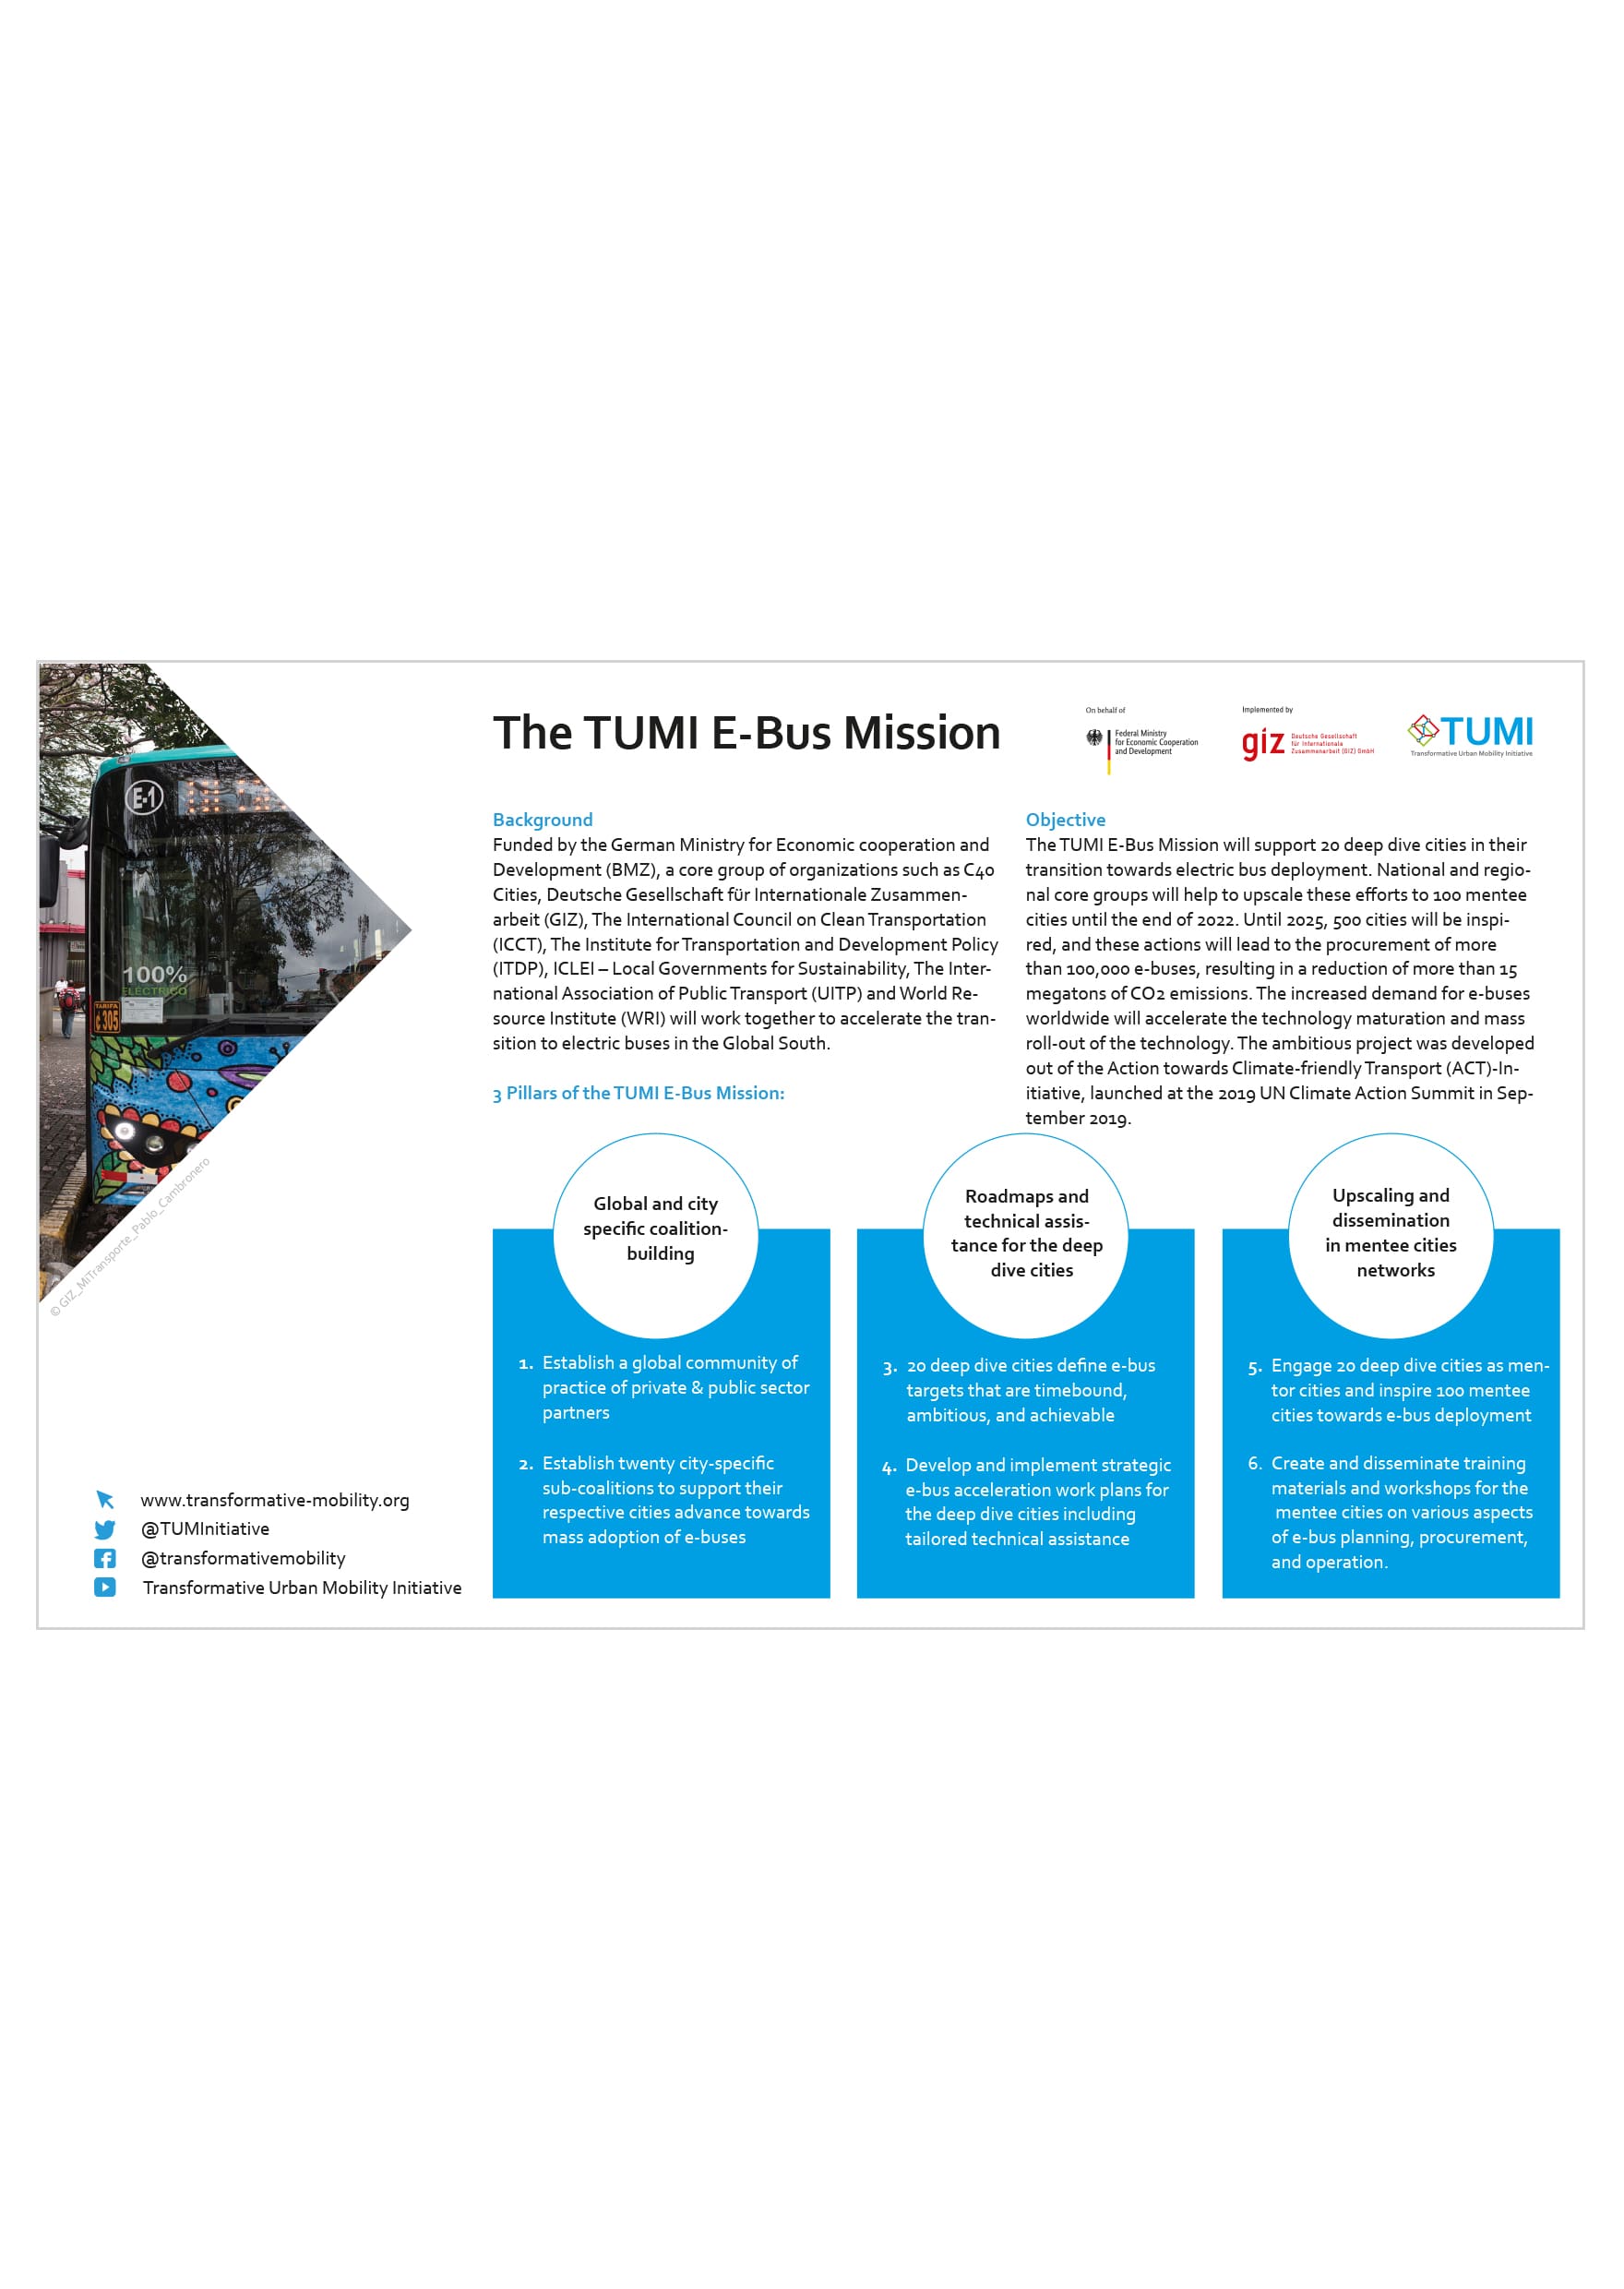 The TUMI-E-Bus Mission